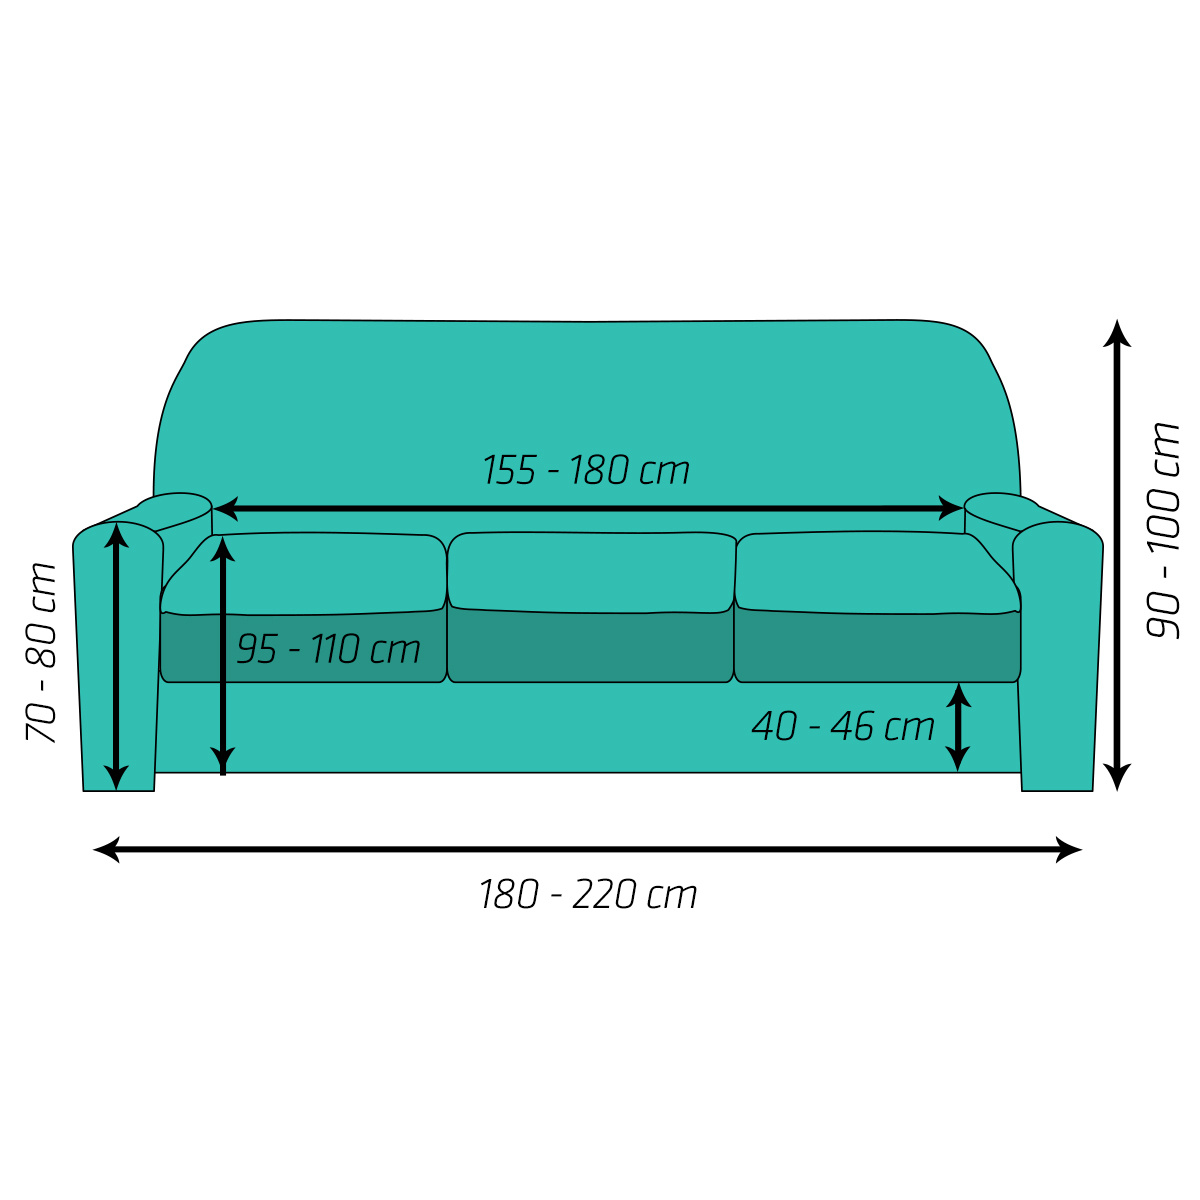 4Home Multielastický poťah na sedačku Comfort Plus sivá, 180 - 220 cm, 180 - 220 cm